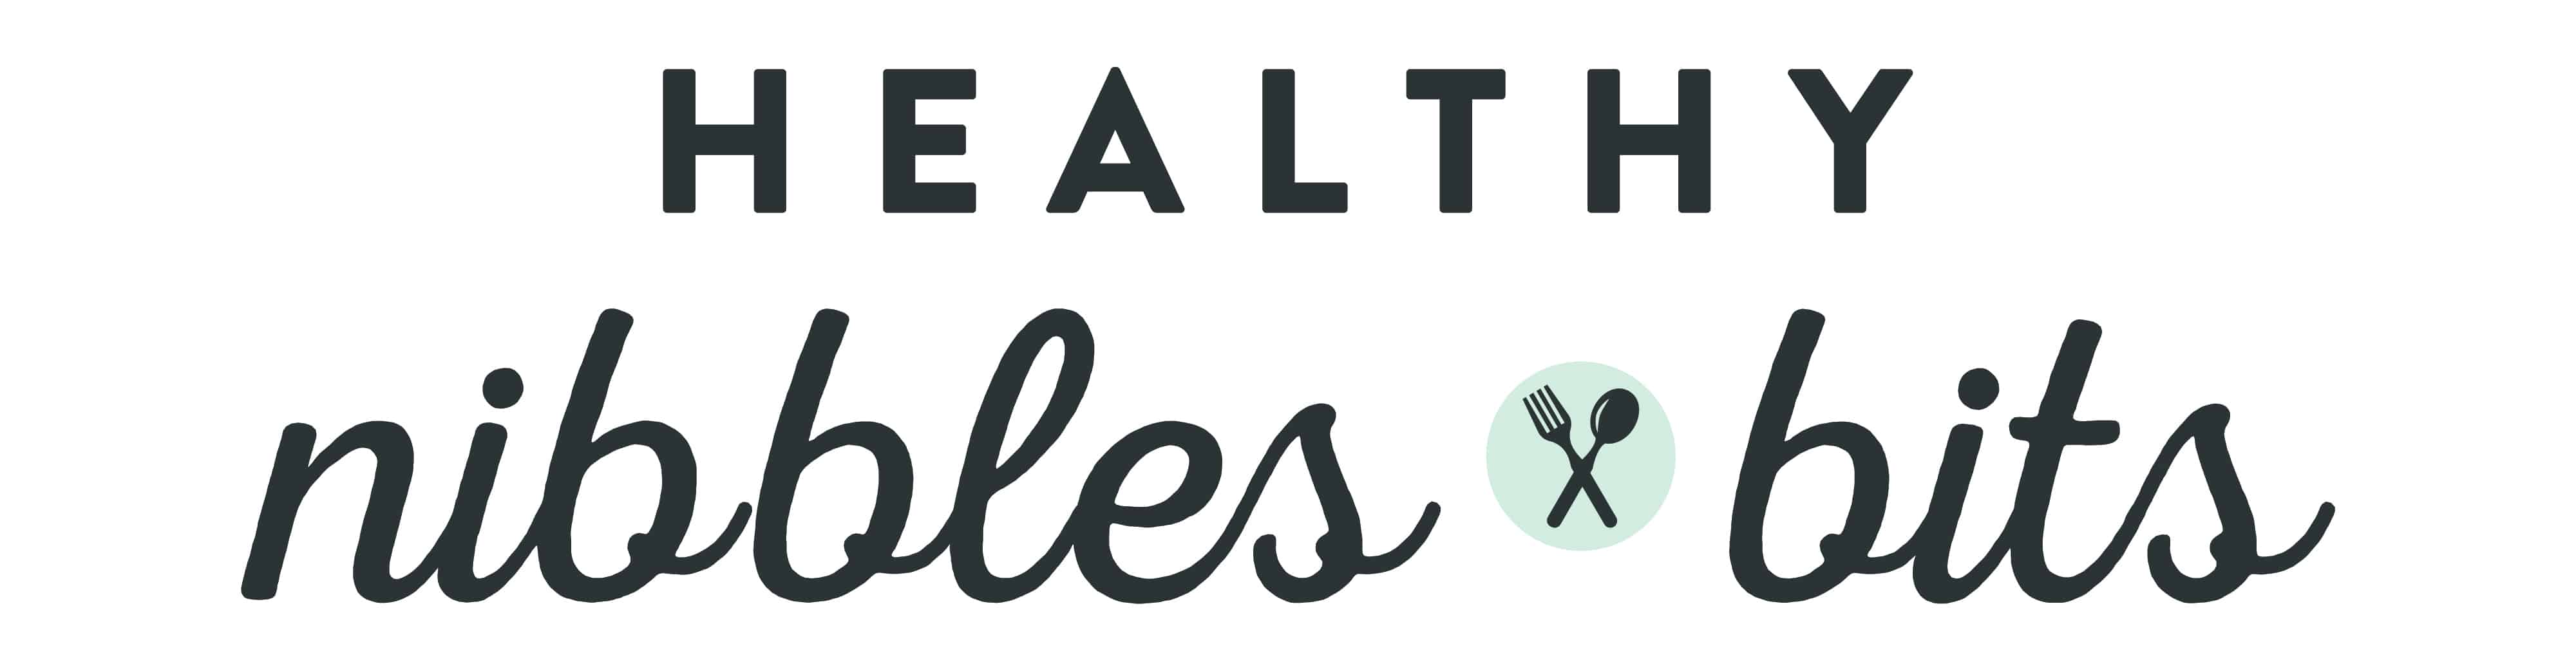 Healthy Nibbles logo